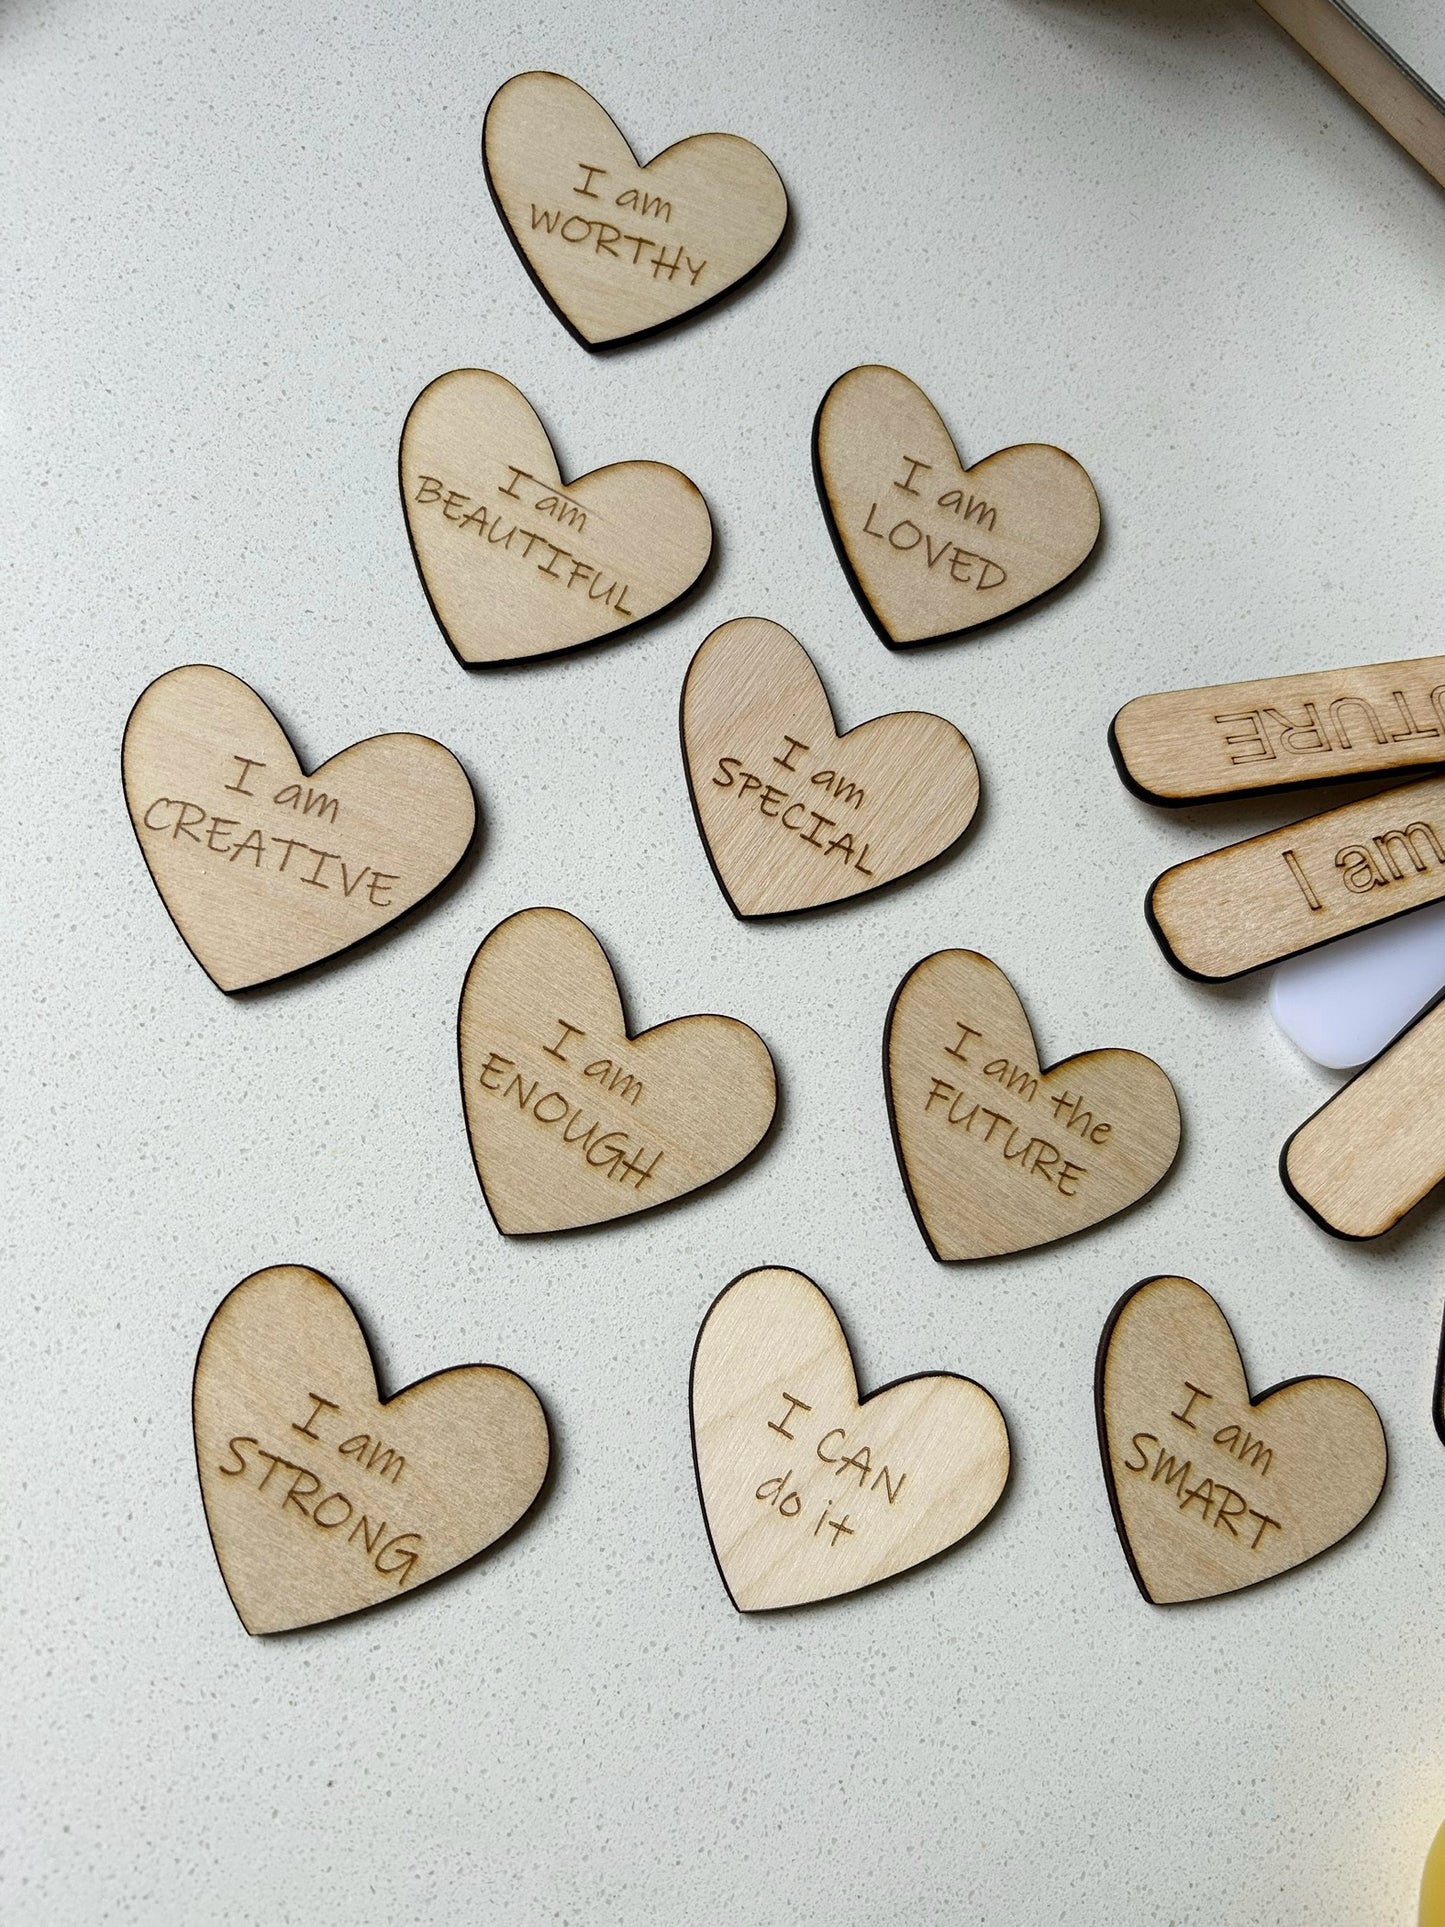 10 Wood Heart Affirmations set